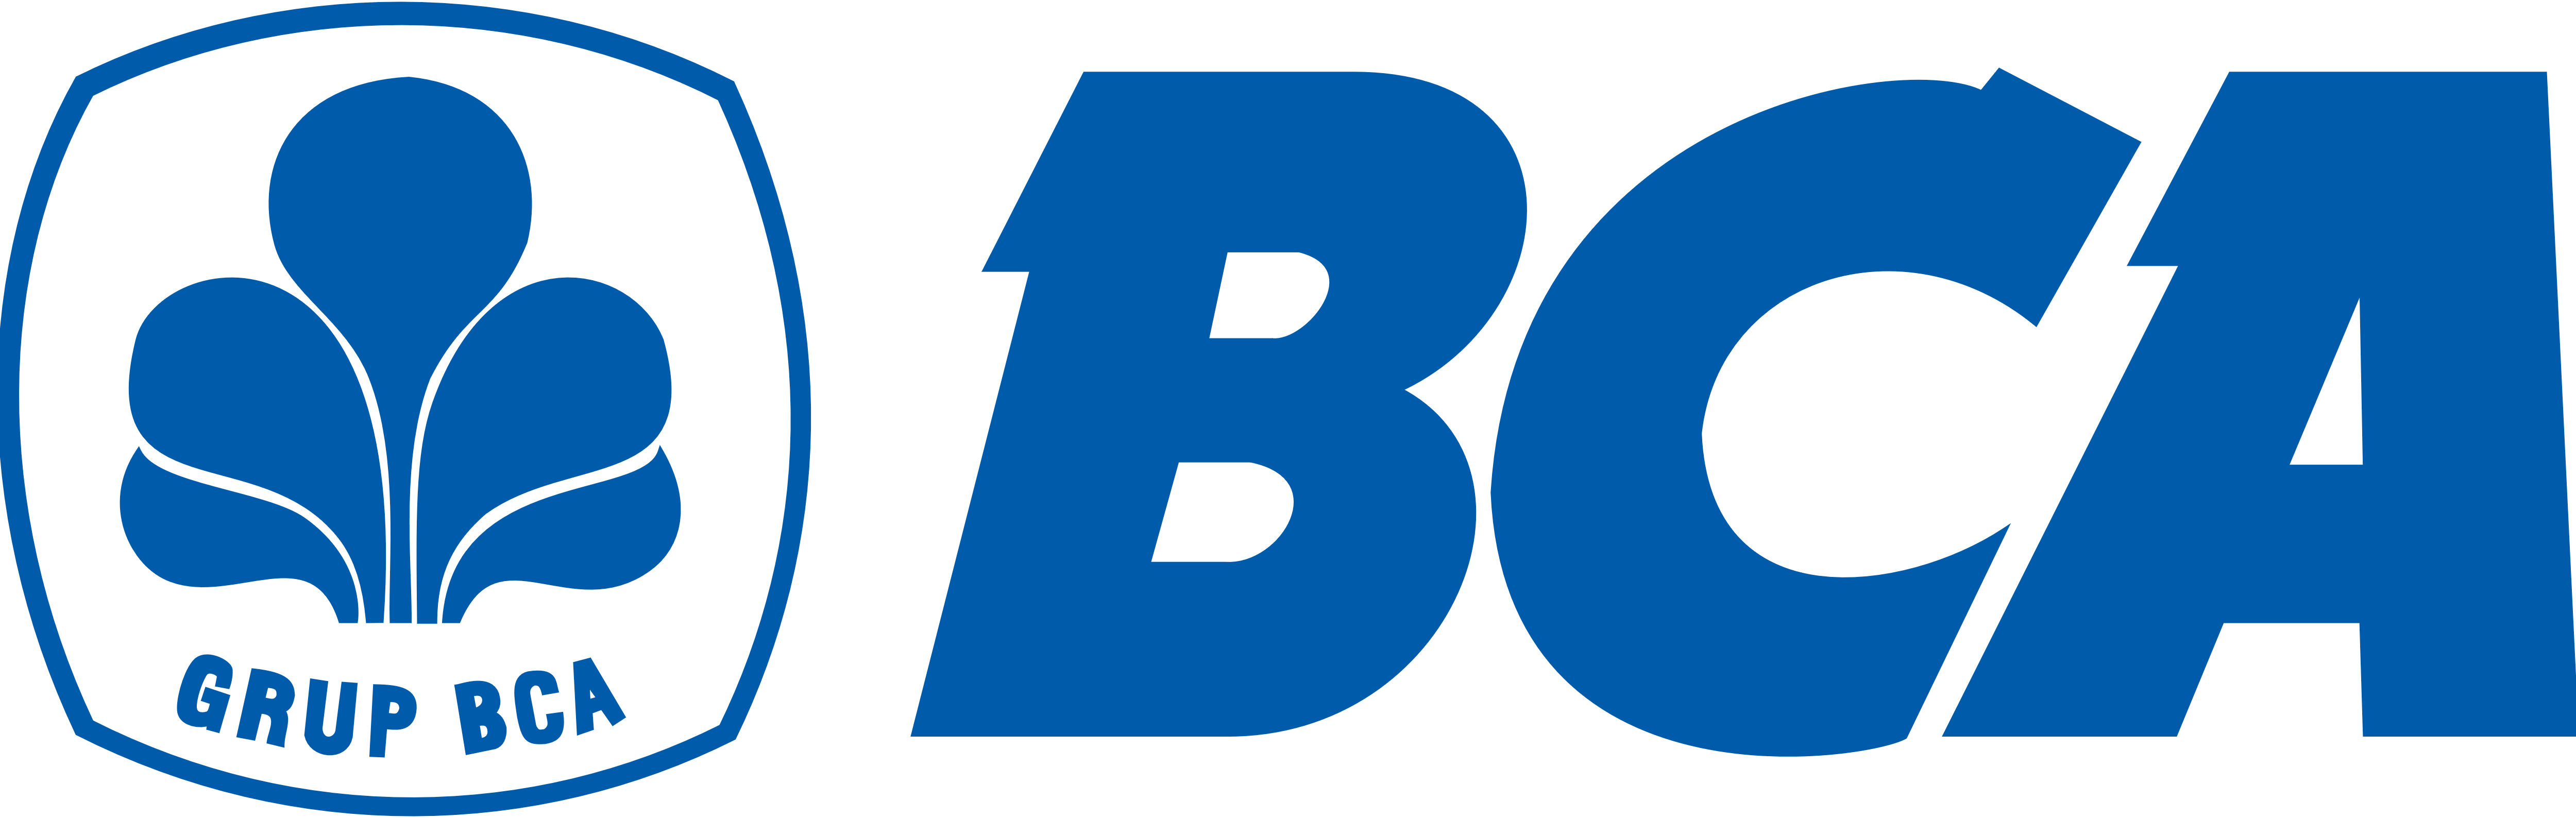 BCA (Bank Central Asia) – Logos Download